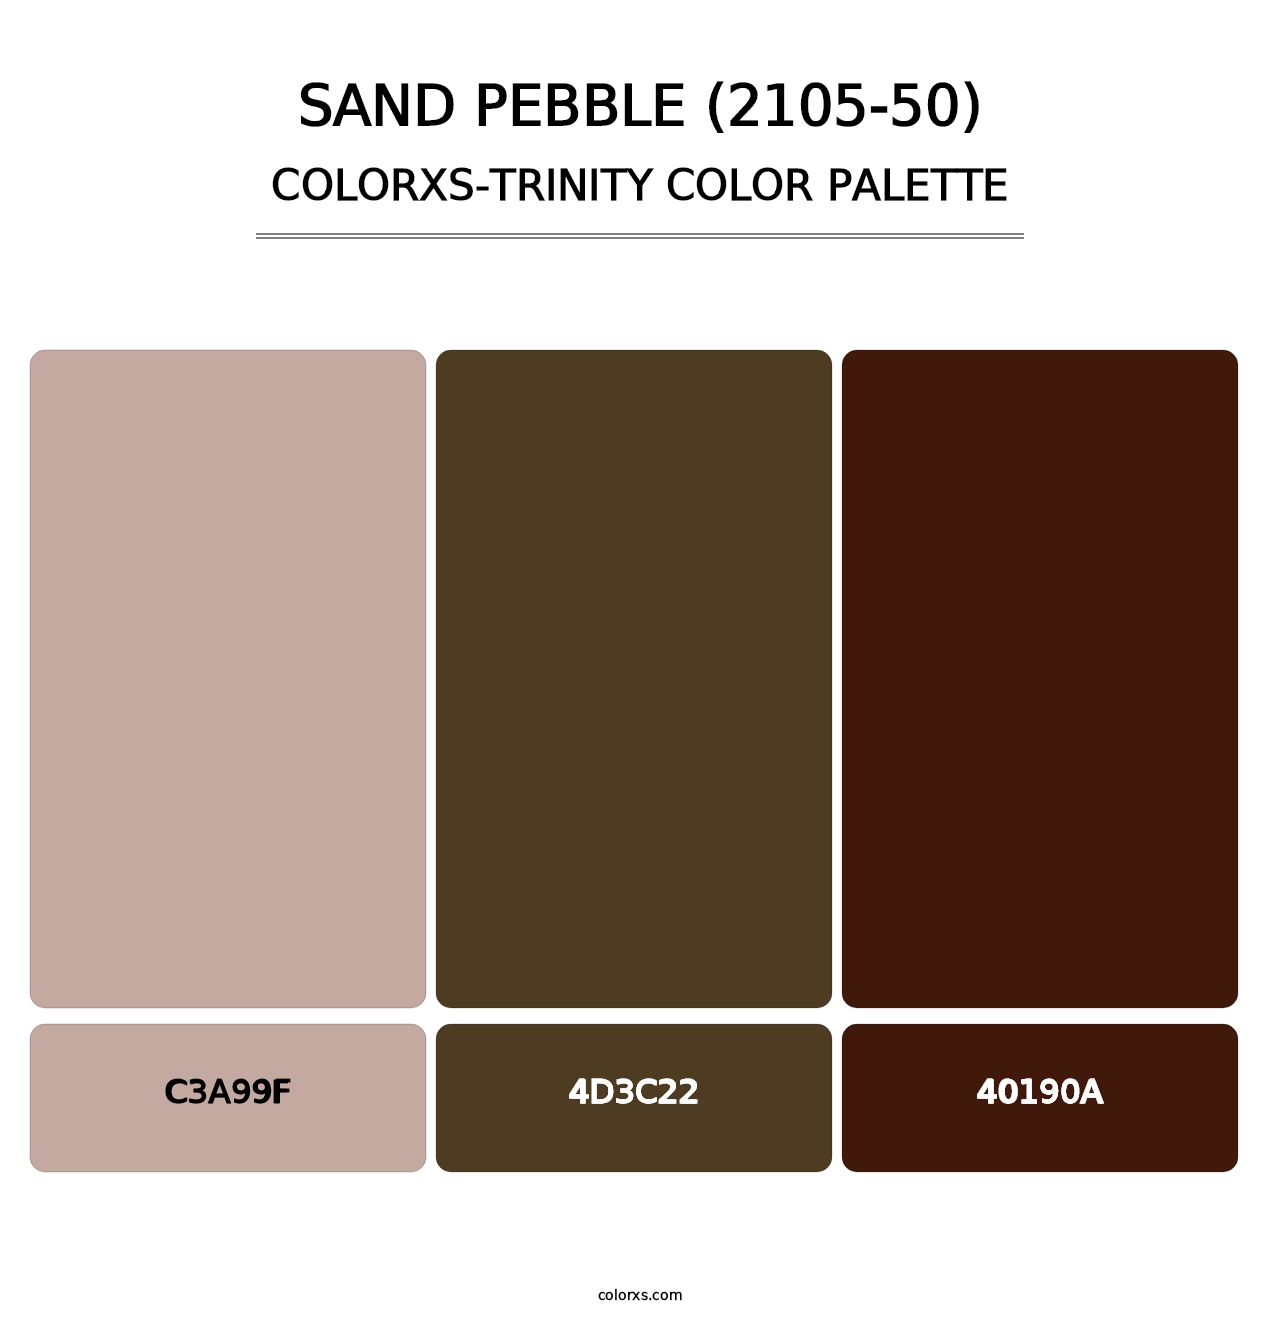 Sand Pebble (2105-50) - Colorxs Trinity Palette